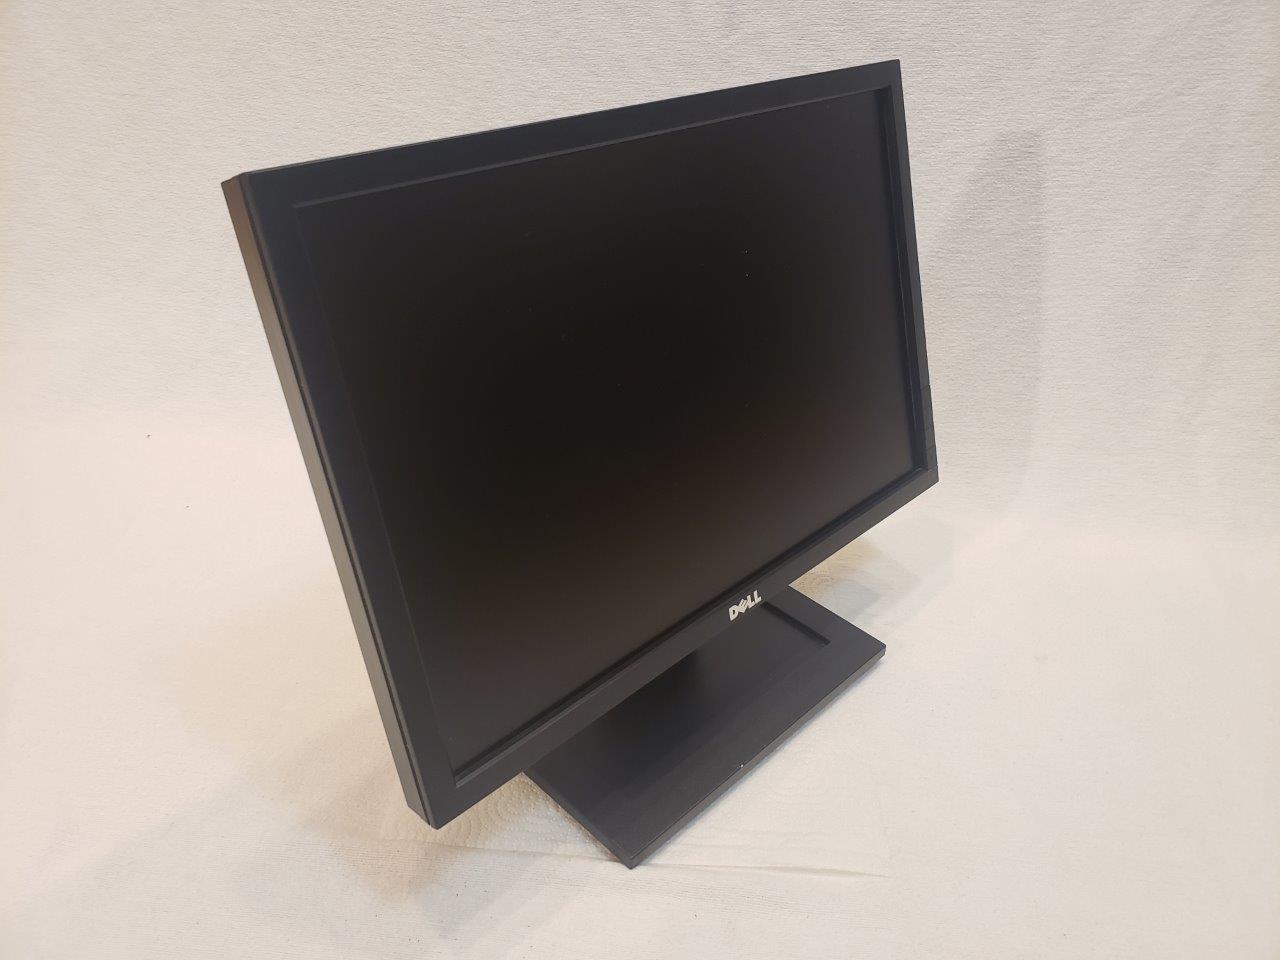 Dell E1911c Grade A 19 inch Widescreen LCD Monitor monitors small